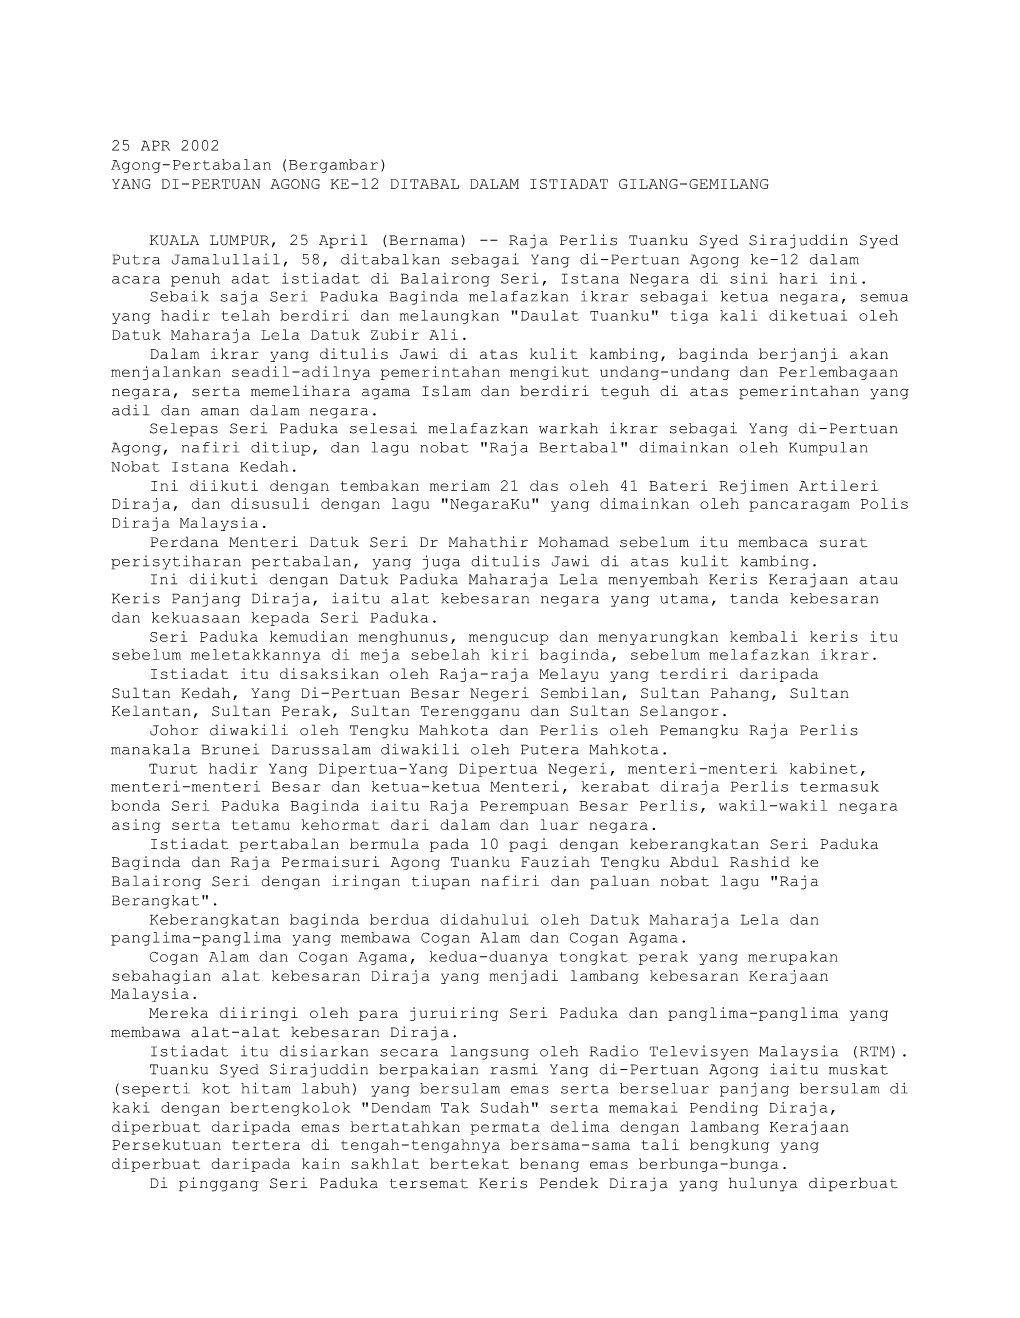 YANG DI-PERTUAN AGONG KE-12 DITABAL DALAM ISTIADAT GILANG-GEMILANG (Bernama 25/04/2002)